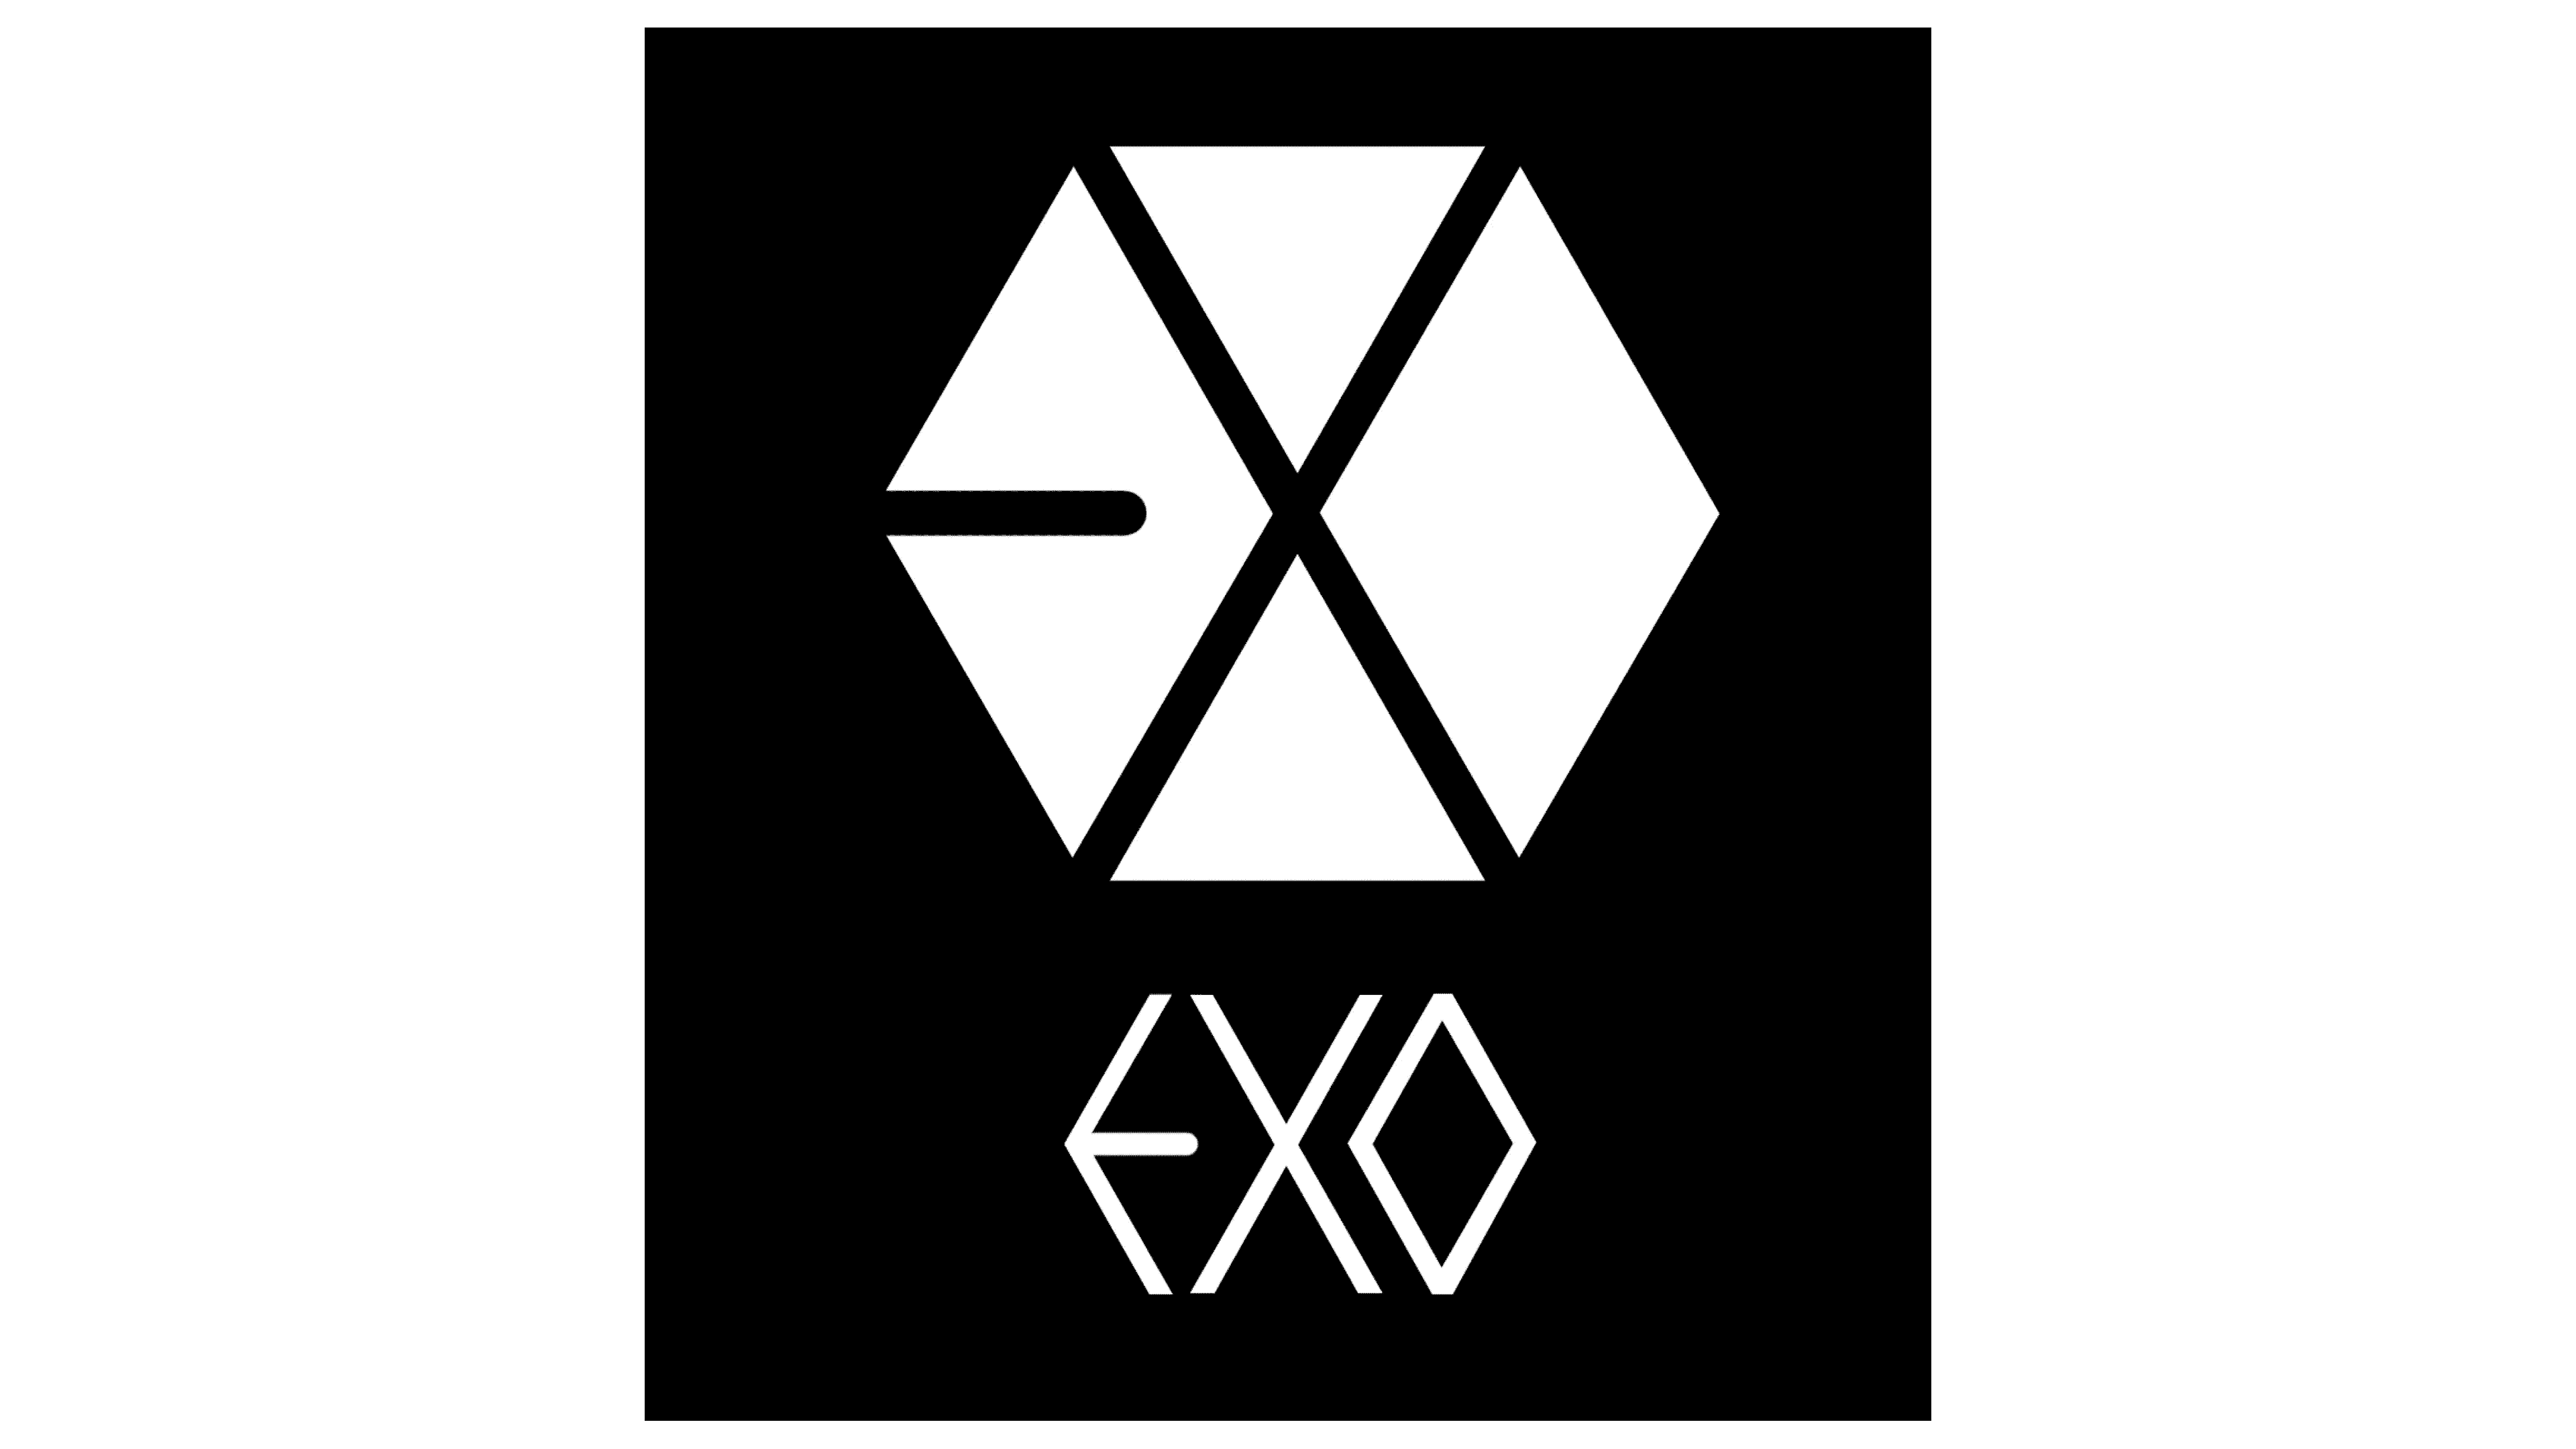 全球大勢團體EXO，創下Triple百萬銷量 第三張正規改版專輯『LOTTO』韓文版/中文版/台壓版